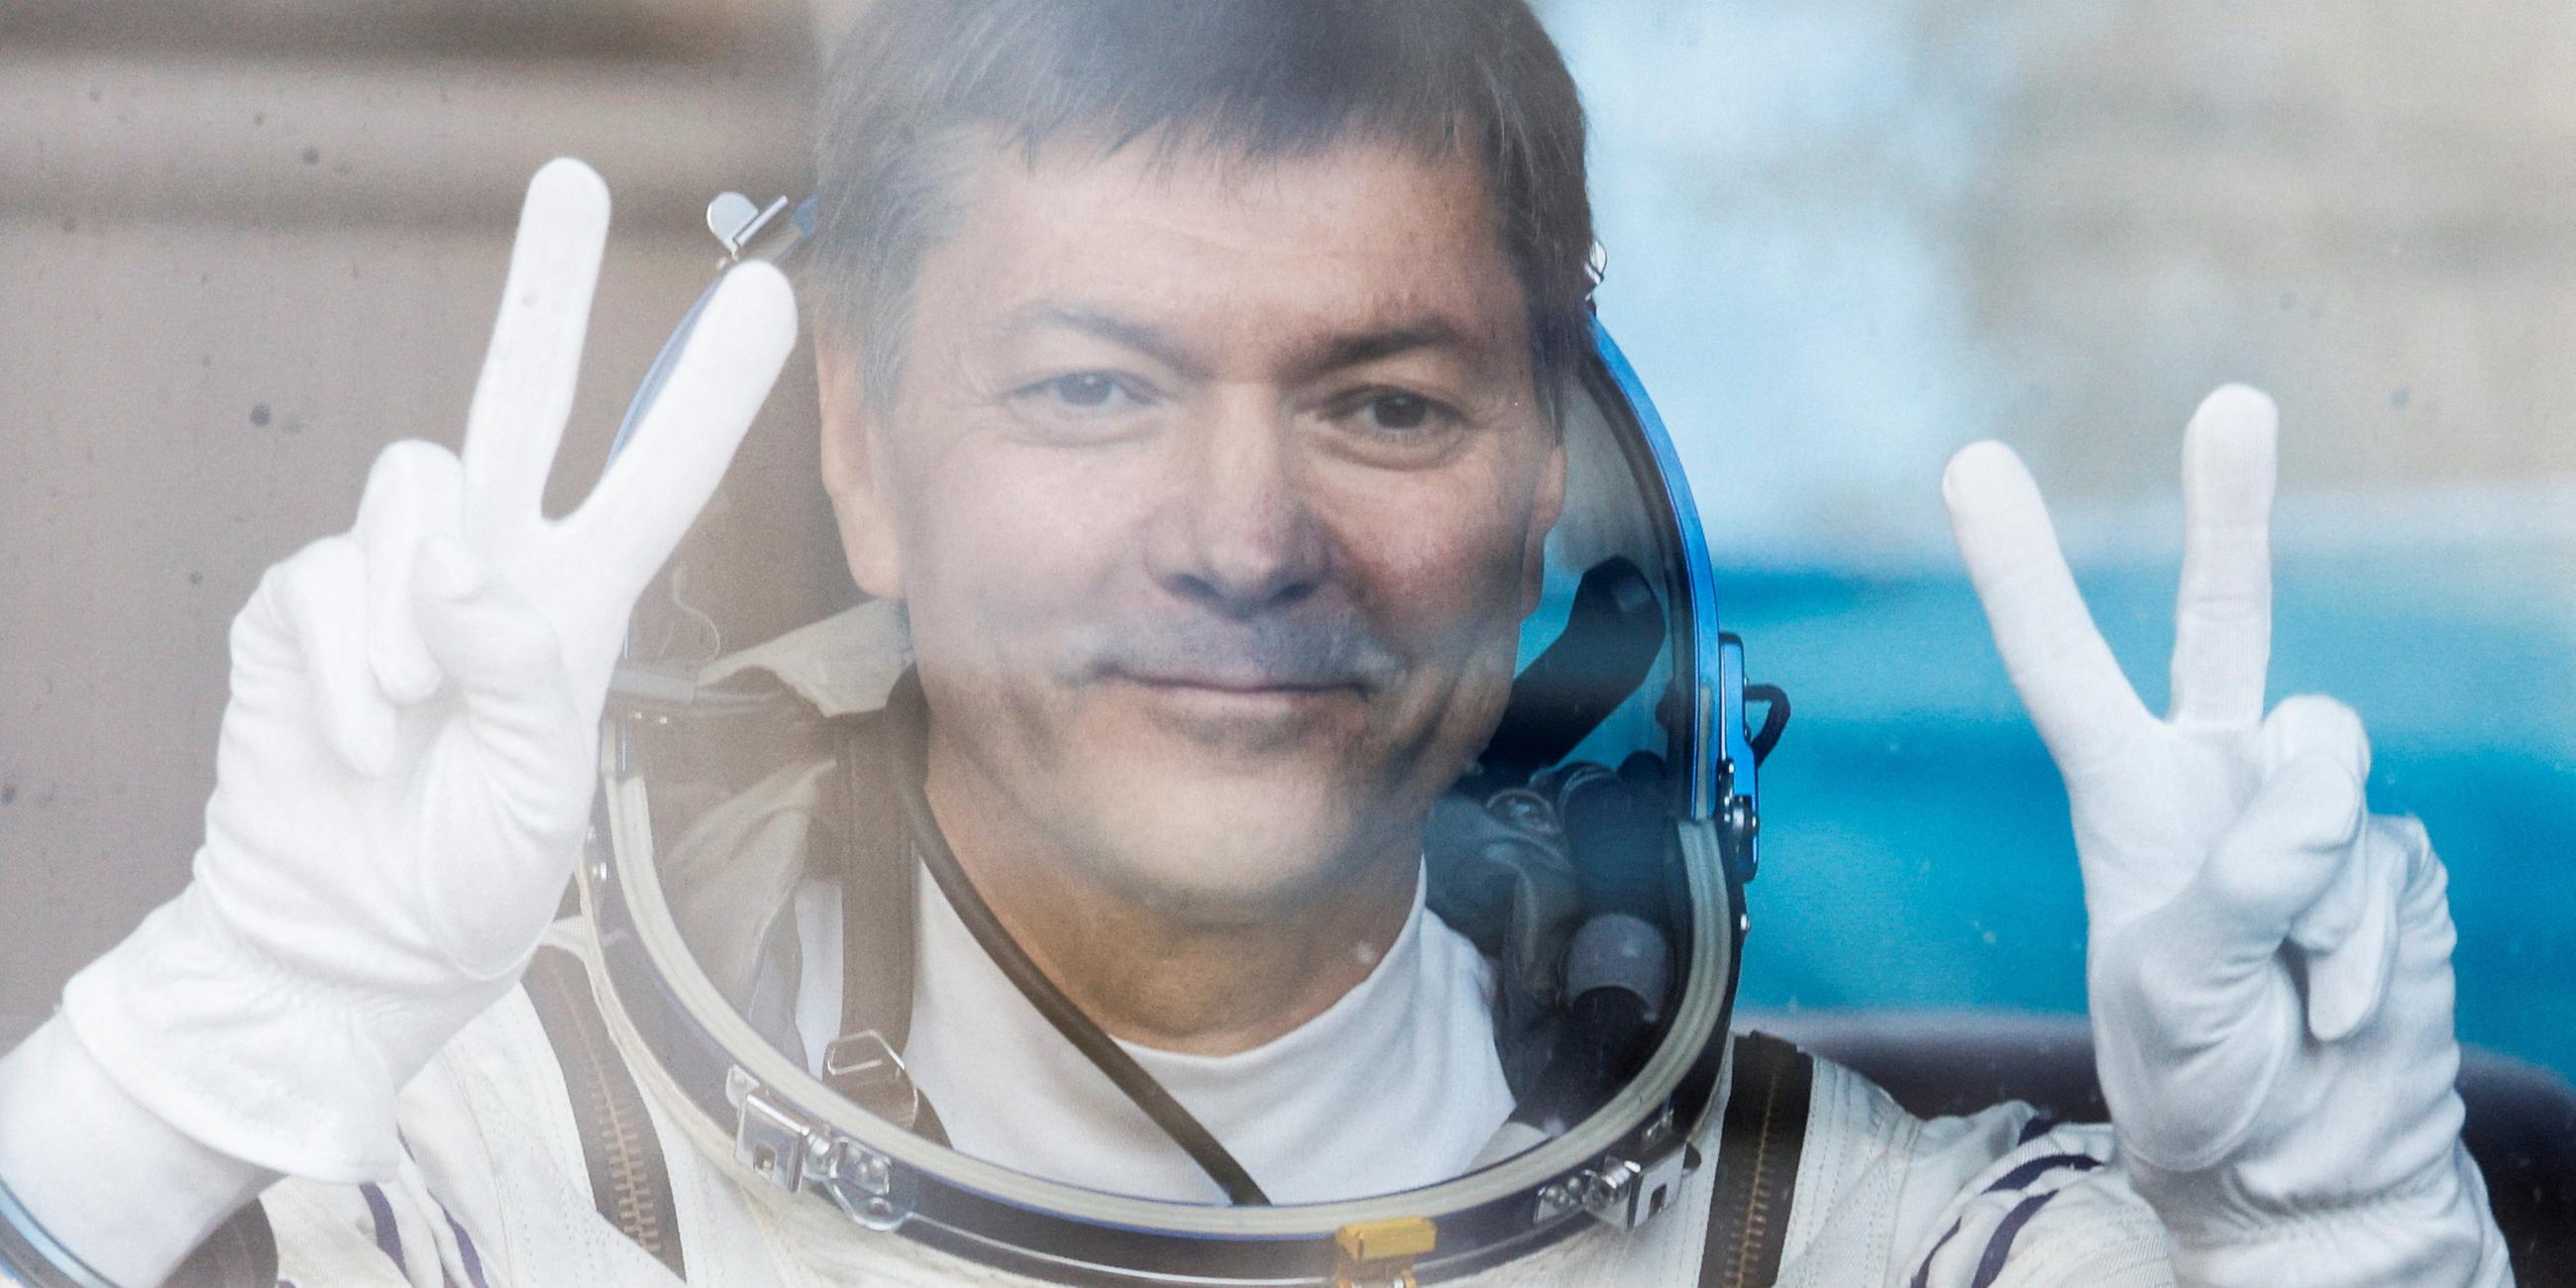 Archiv, 15.09.2023: Der Kosmonaut Oleg Kononenko steht in einem Bus vor der Abfahrt zur Startrampe in Kasachstan. Oleg Kononenko stellte am 04. Februar 2024 mit 878 Tagen, 11 Stunden und 29 Minuten einen Weltrekord für die Gesamtzeit im Weltraum auf, teilte die Raumfahrtbehörde Roscosmos mit.